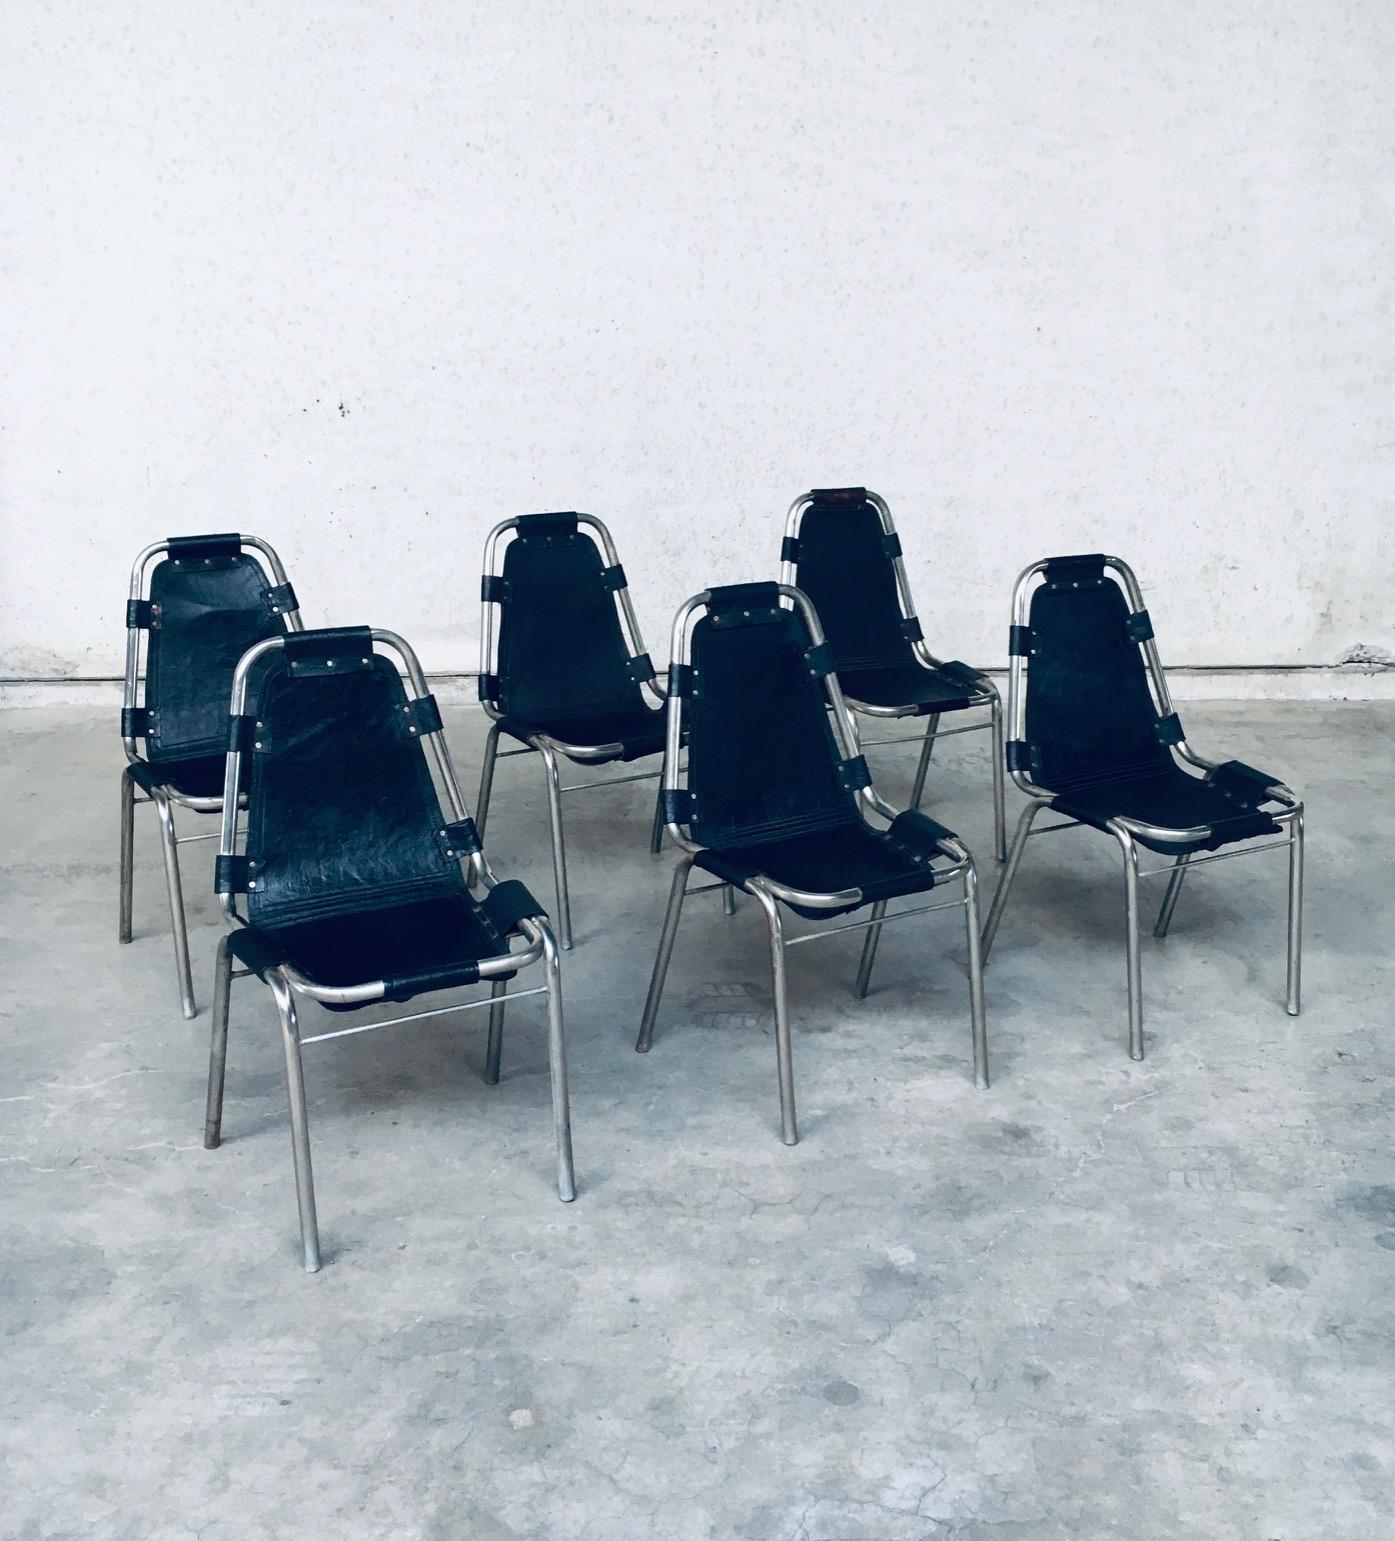 Ensemble de 6 chaises de salle à manger en cuir et acier au design industriel vintage. Fabriquées en Inde dans les années 1980. Cuir sur armature métallique en acier. Ils sont empilables. Le cuir a été taché d'une épaisse couche noire. Sur certaines